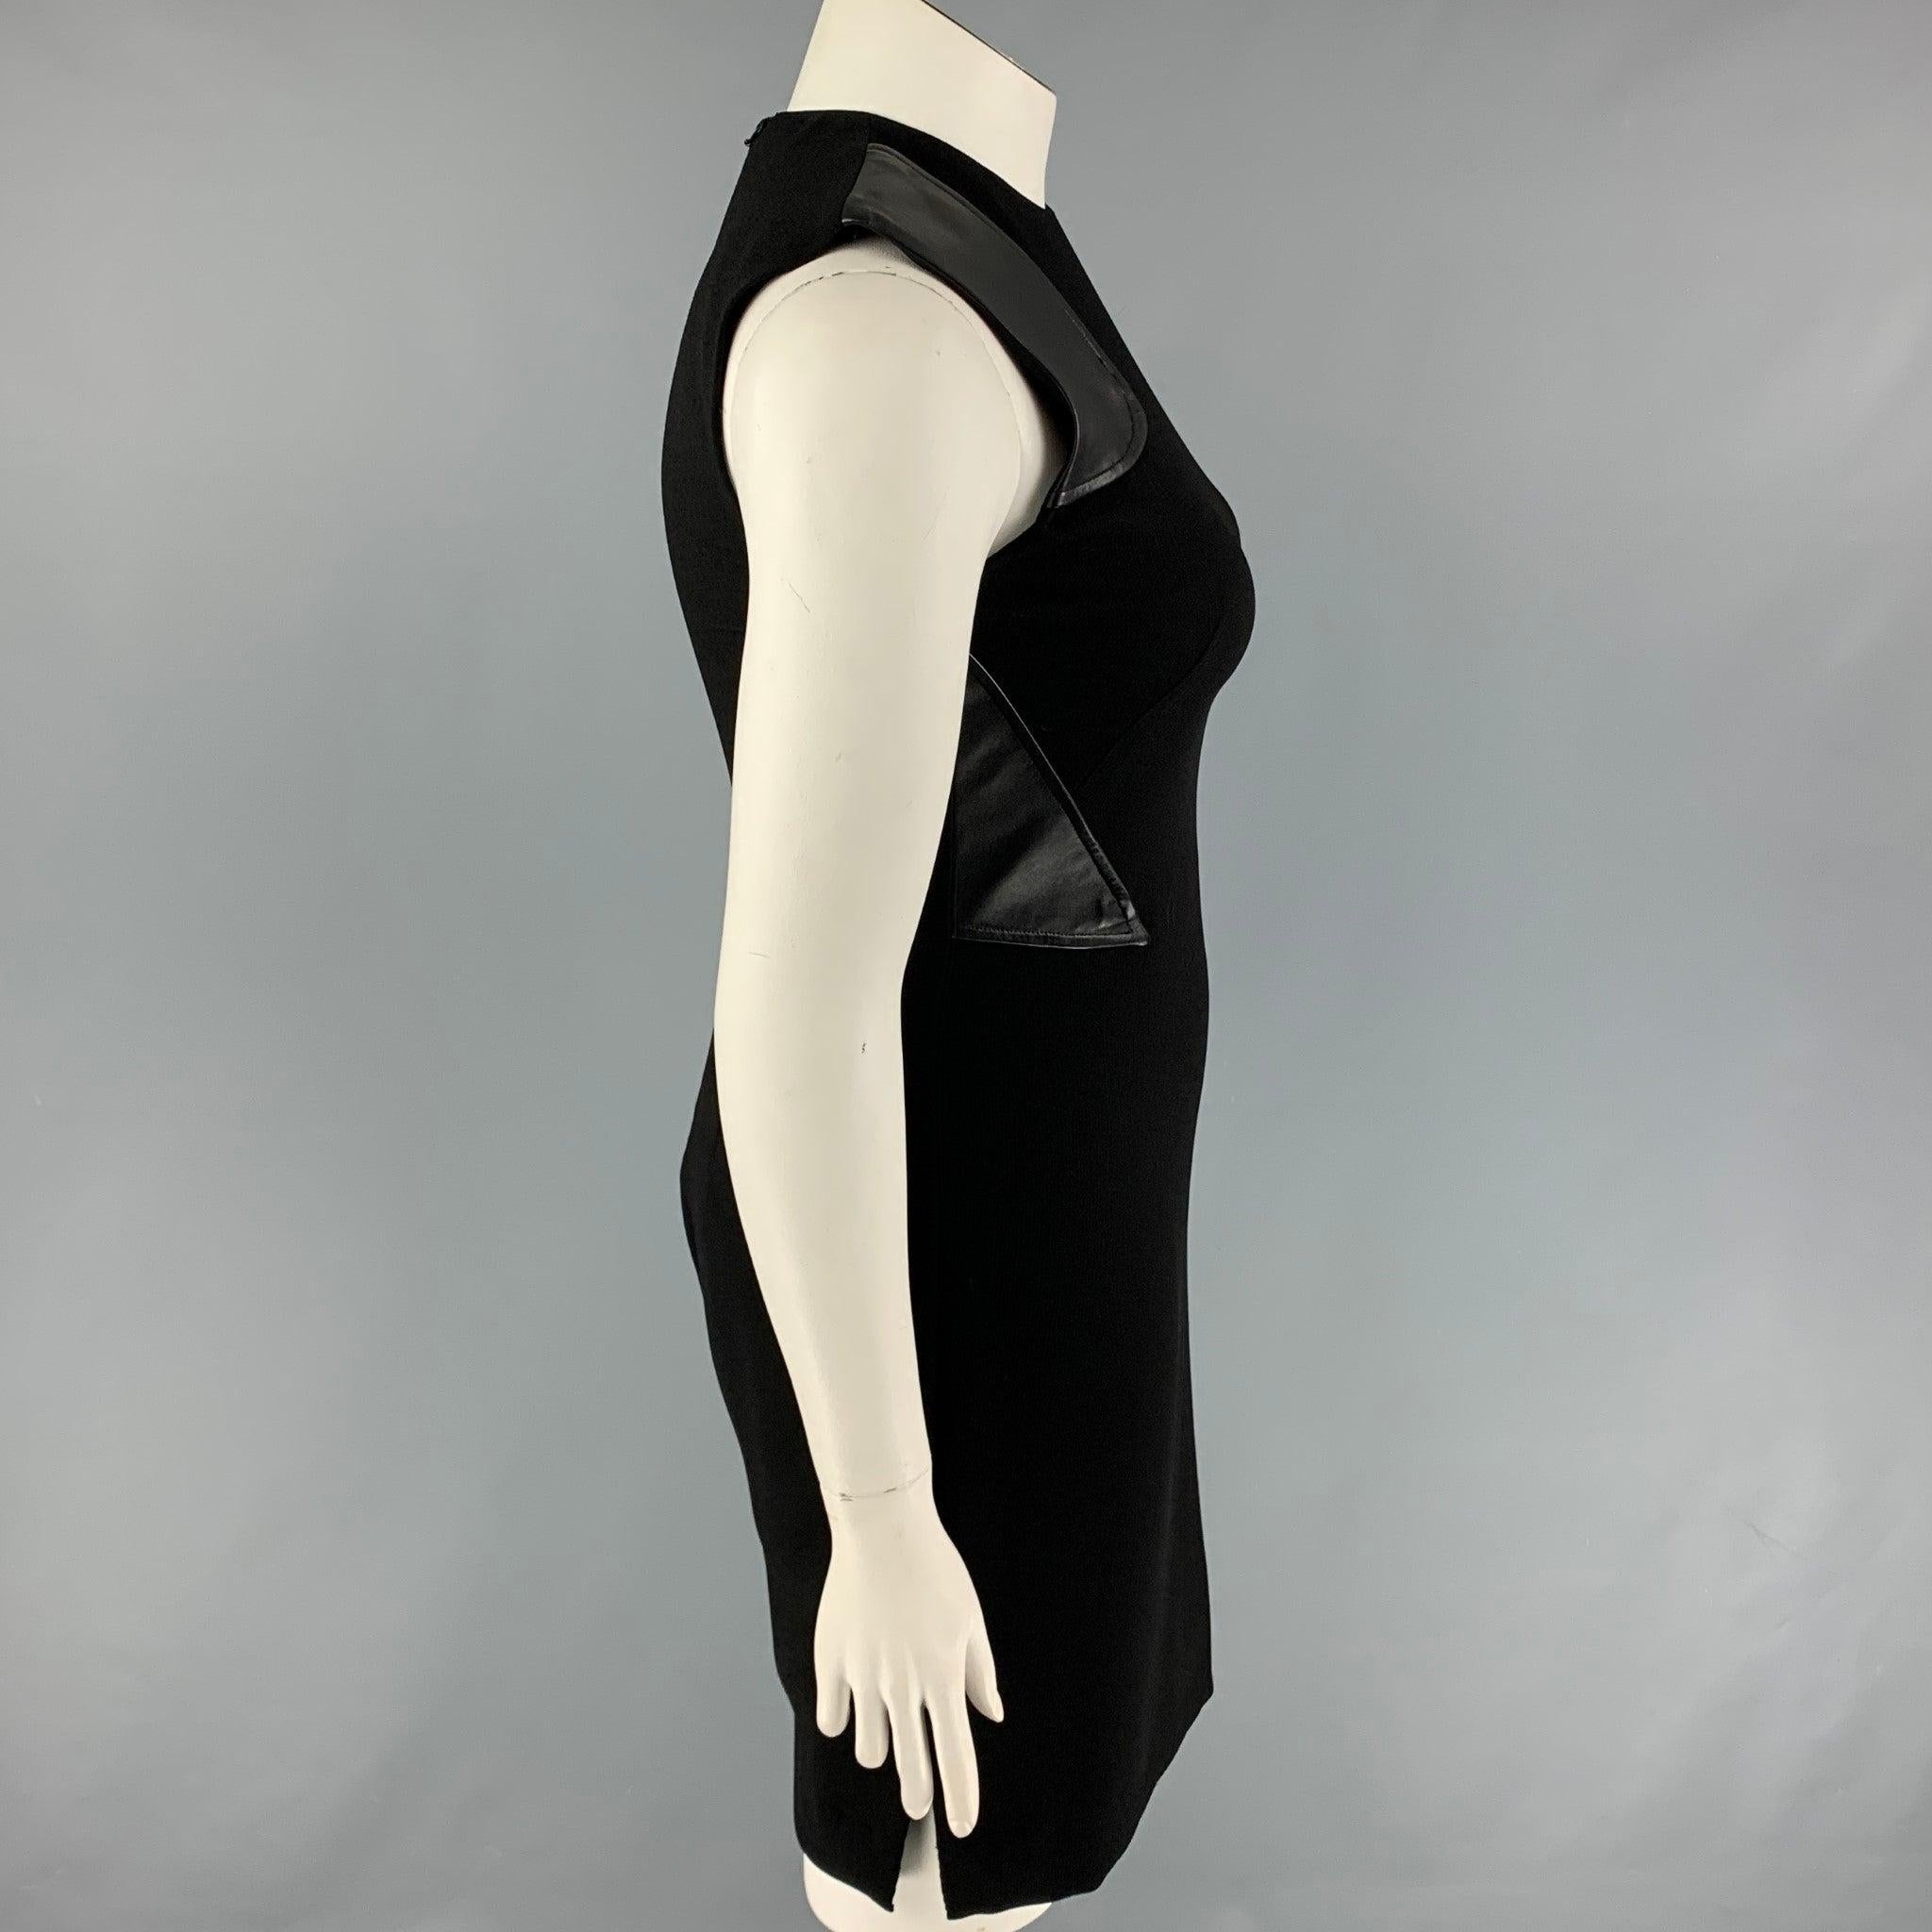 Das Kleid von PRABAL GURUNG ist aus schwarzem Polyester, hat einen Mantel, Lederverzierungen, ist ärmellos und wird hinten mit einem Reißverschluss geschlossen. Hergestellt in den USA.
Sehr gut
Gebrauchtes Zustand. 

Markiert:   10 

Abmessungen: 
